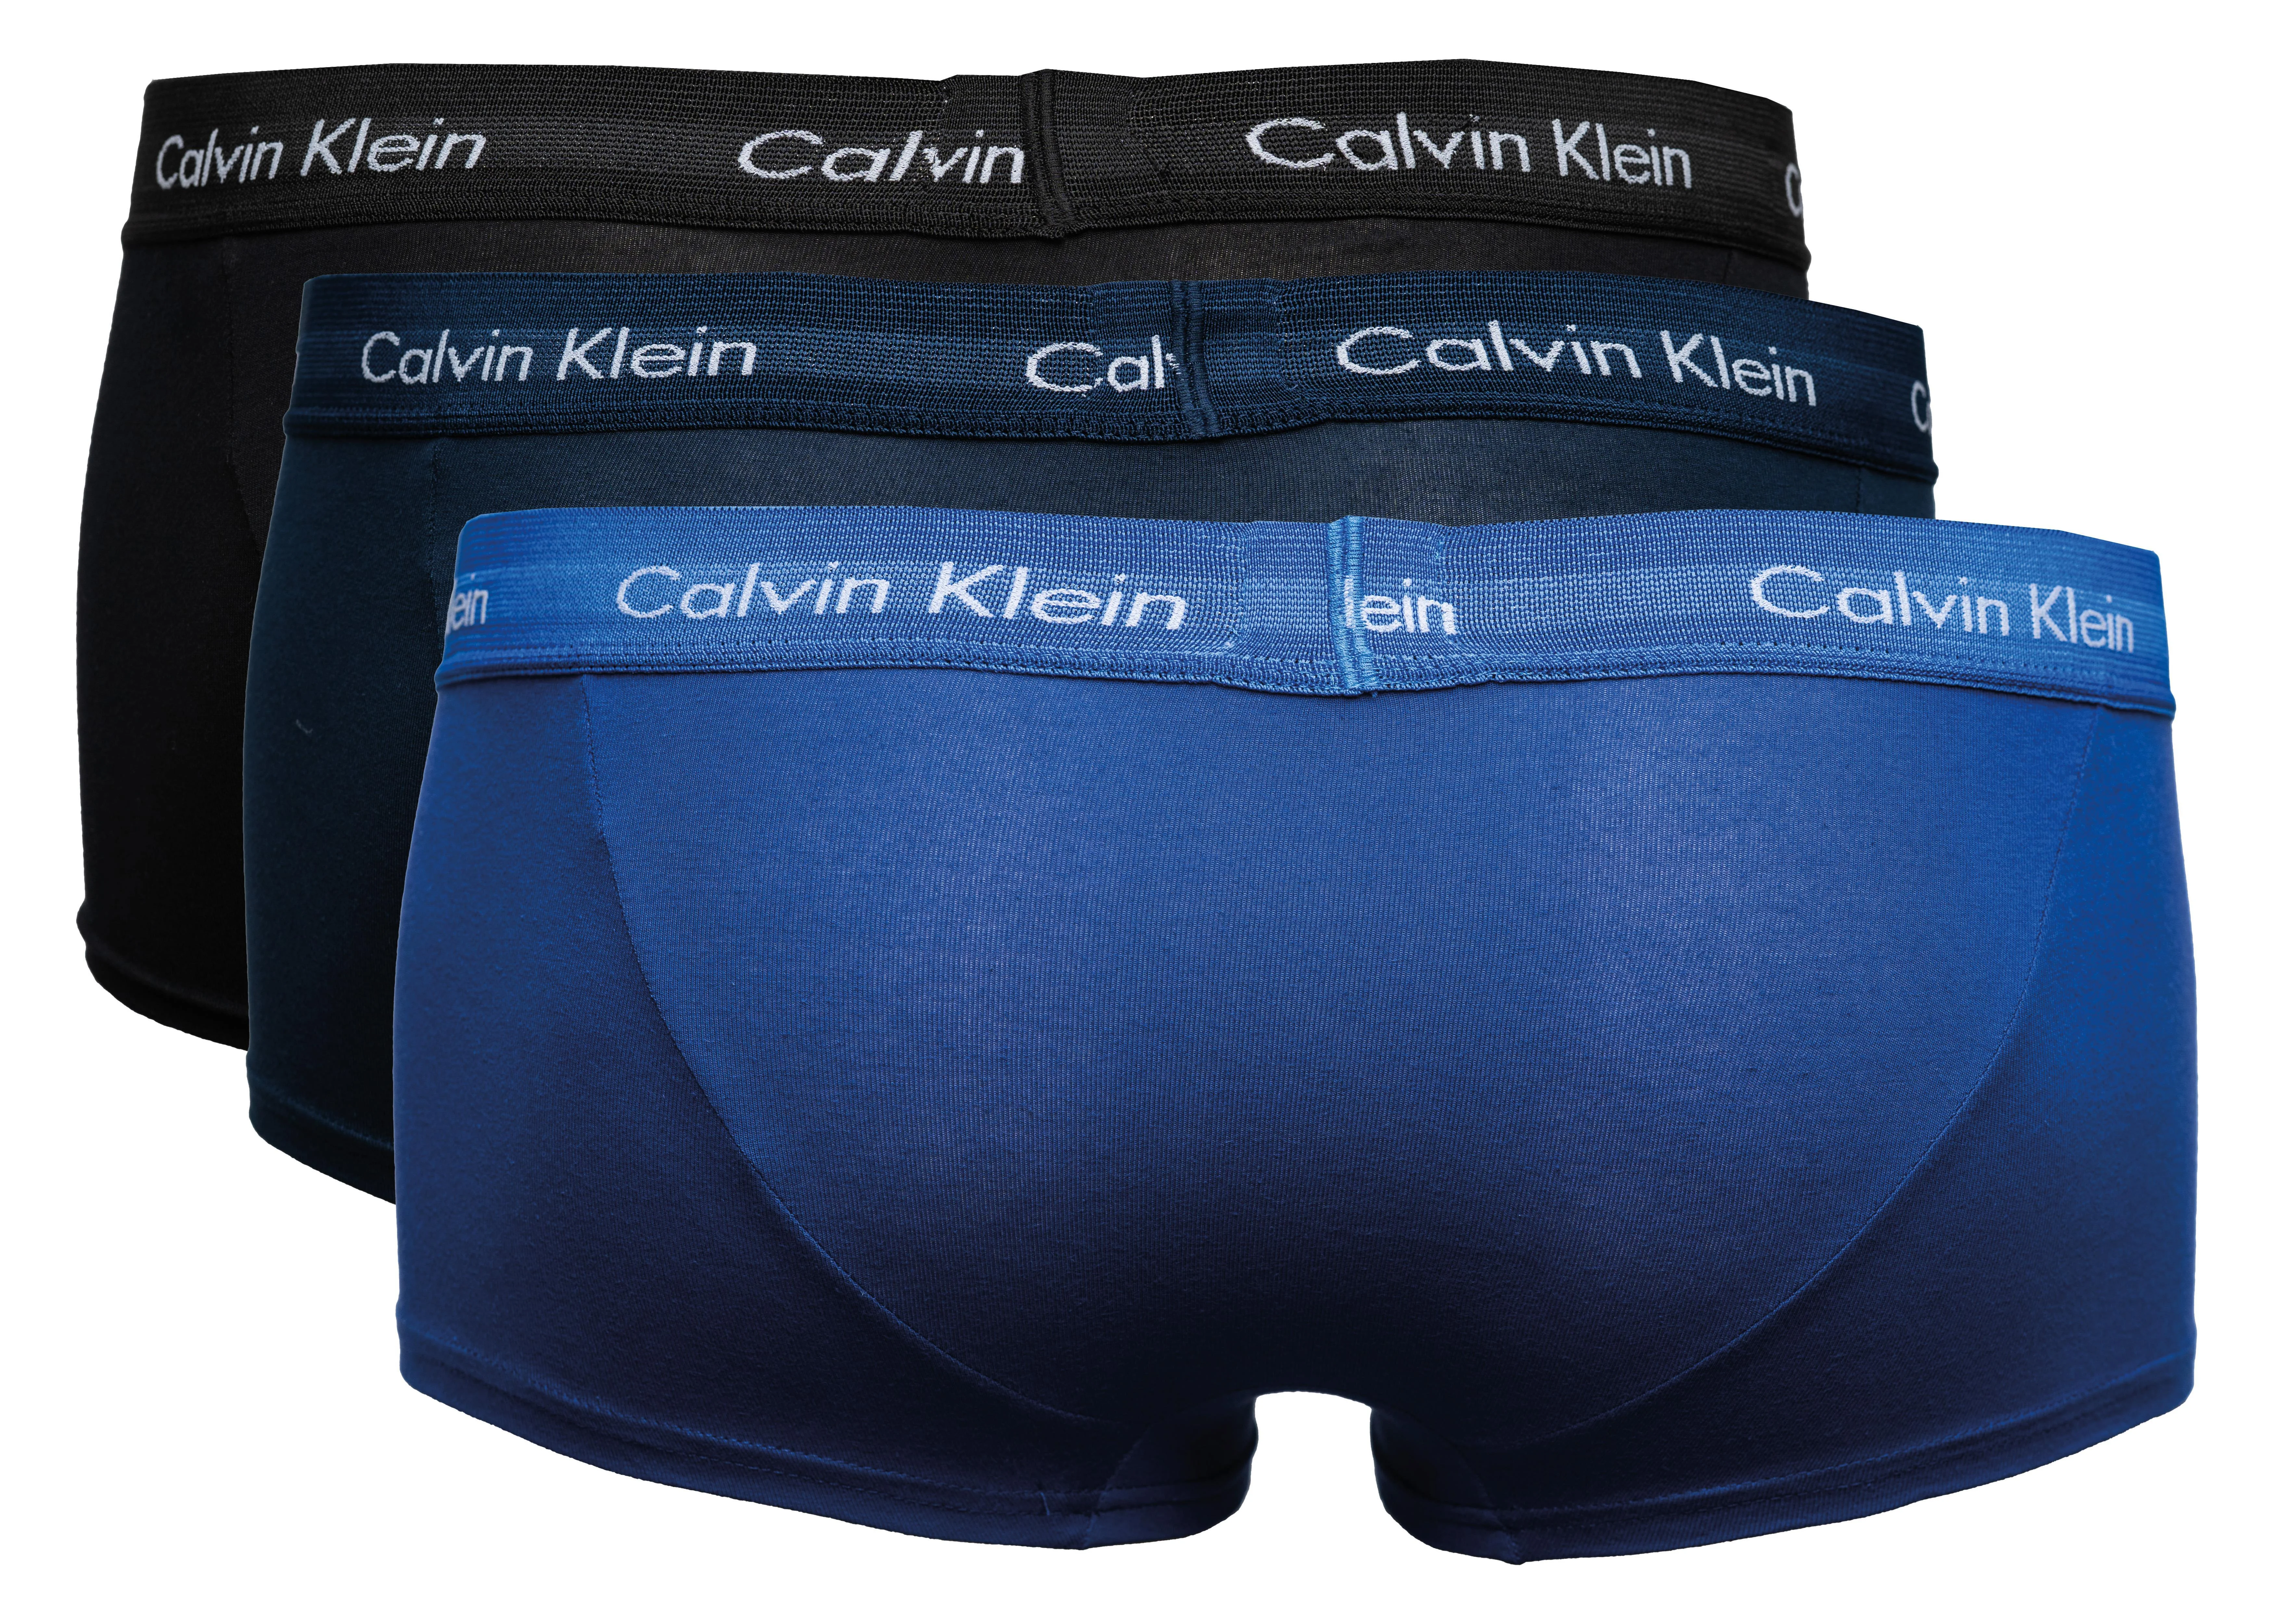 CALVIN KLEIN Boxershorts 3er-Pack  schwarz, marine, royal blau, Größe S